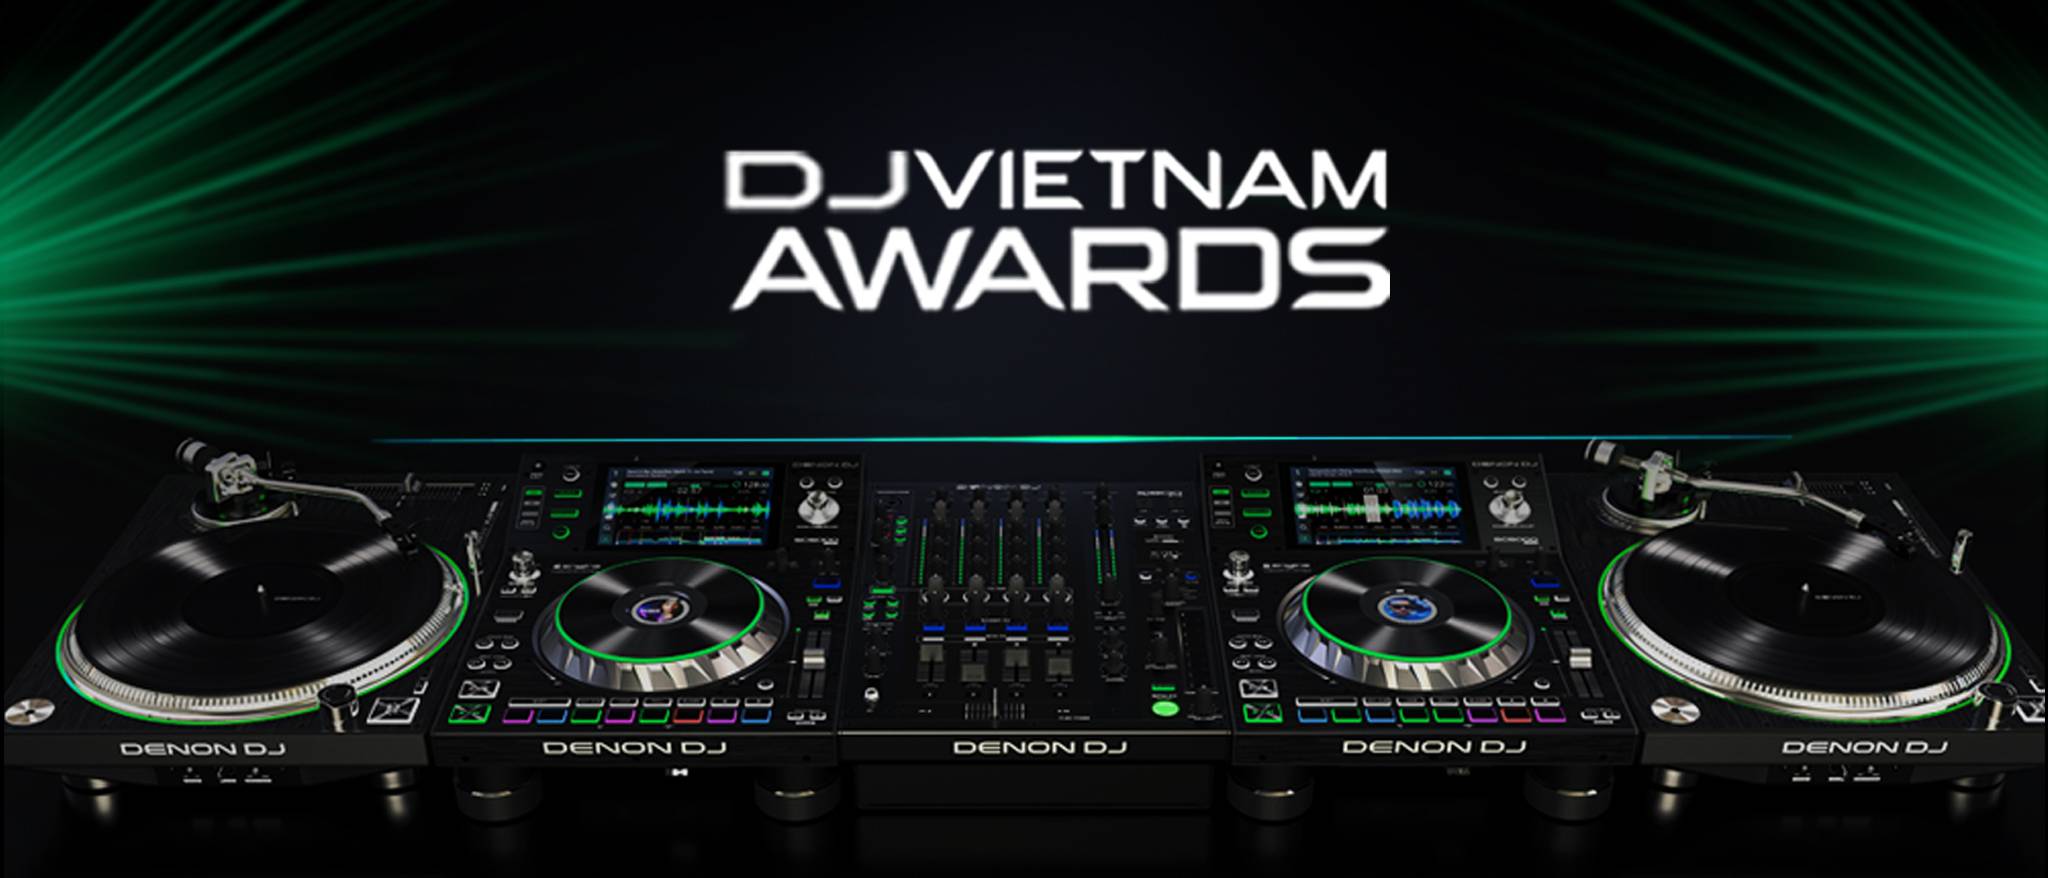 Ai Sẽ Đại Diện Khu Vực Phía Bắc Tham Gia Chung Kết Denon DJ Vietnam Awards?